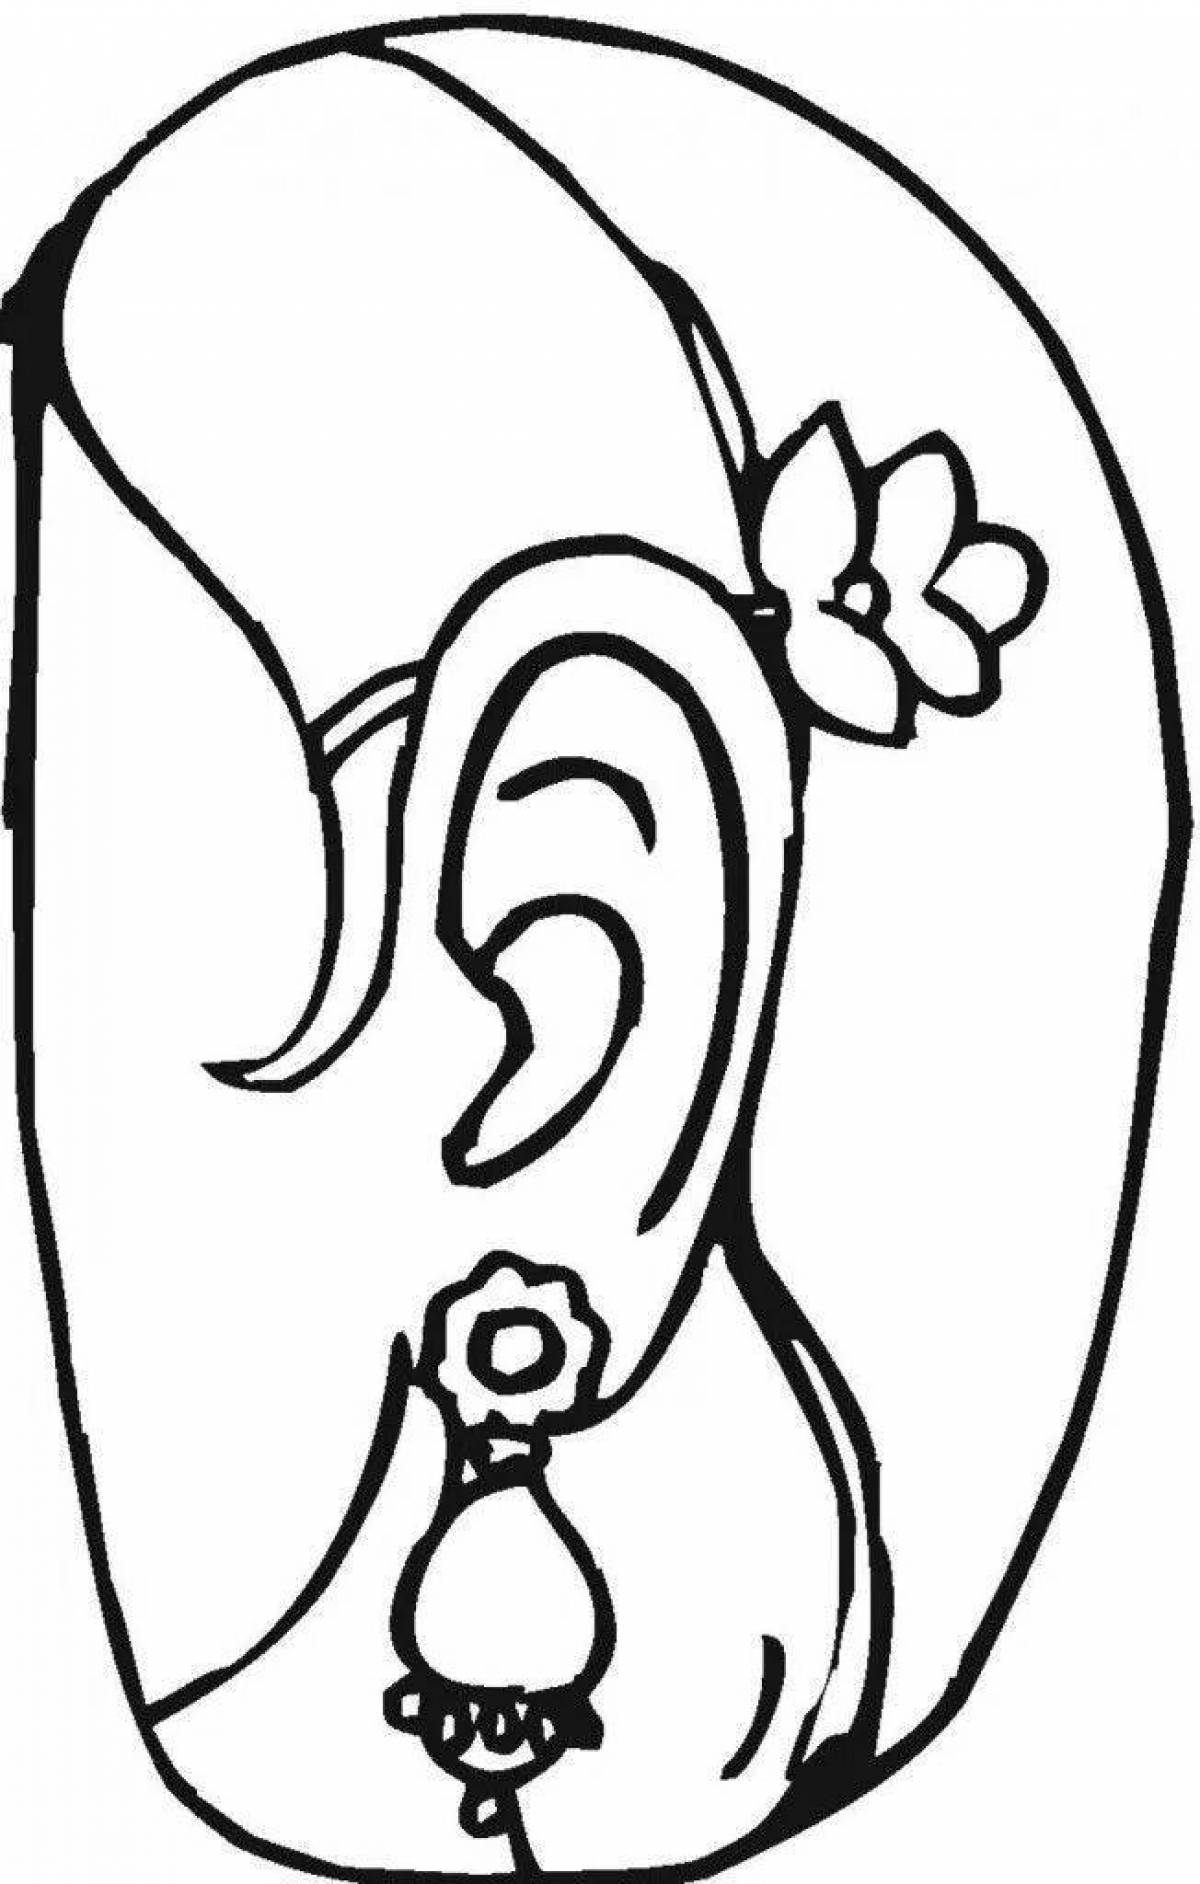 Ear #7